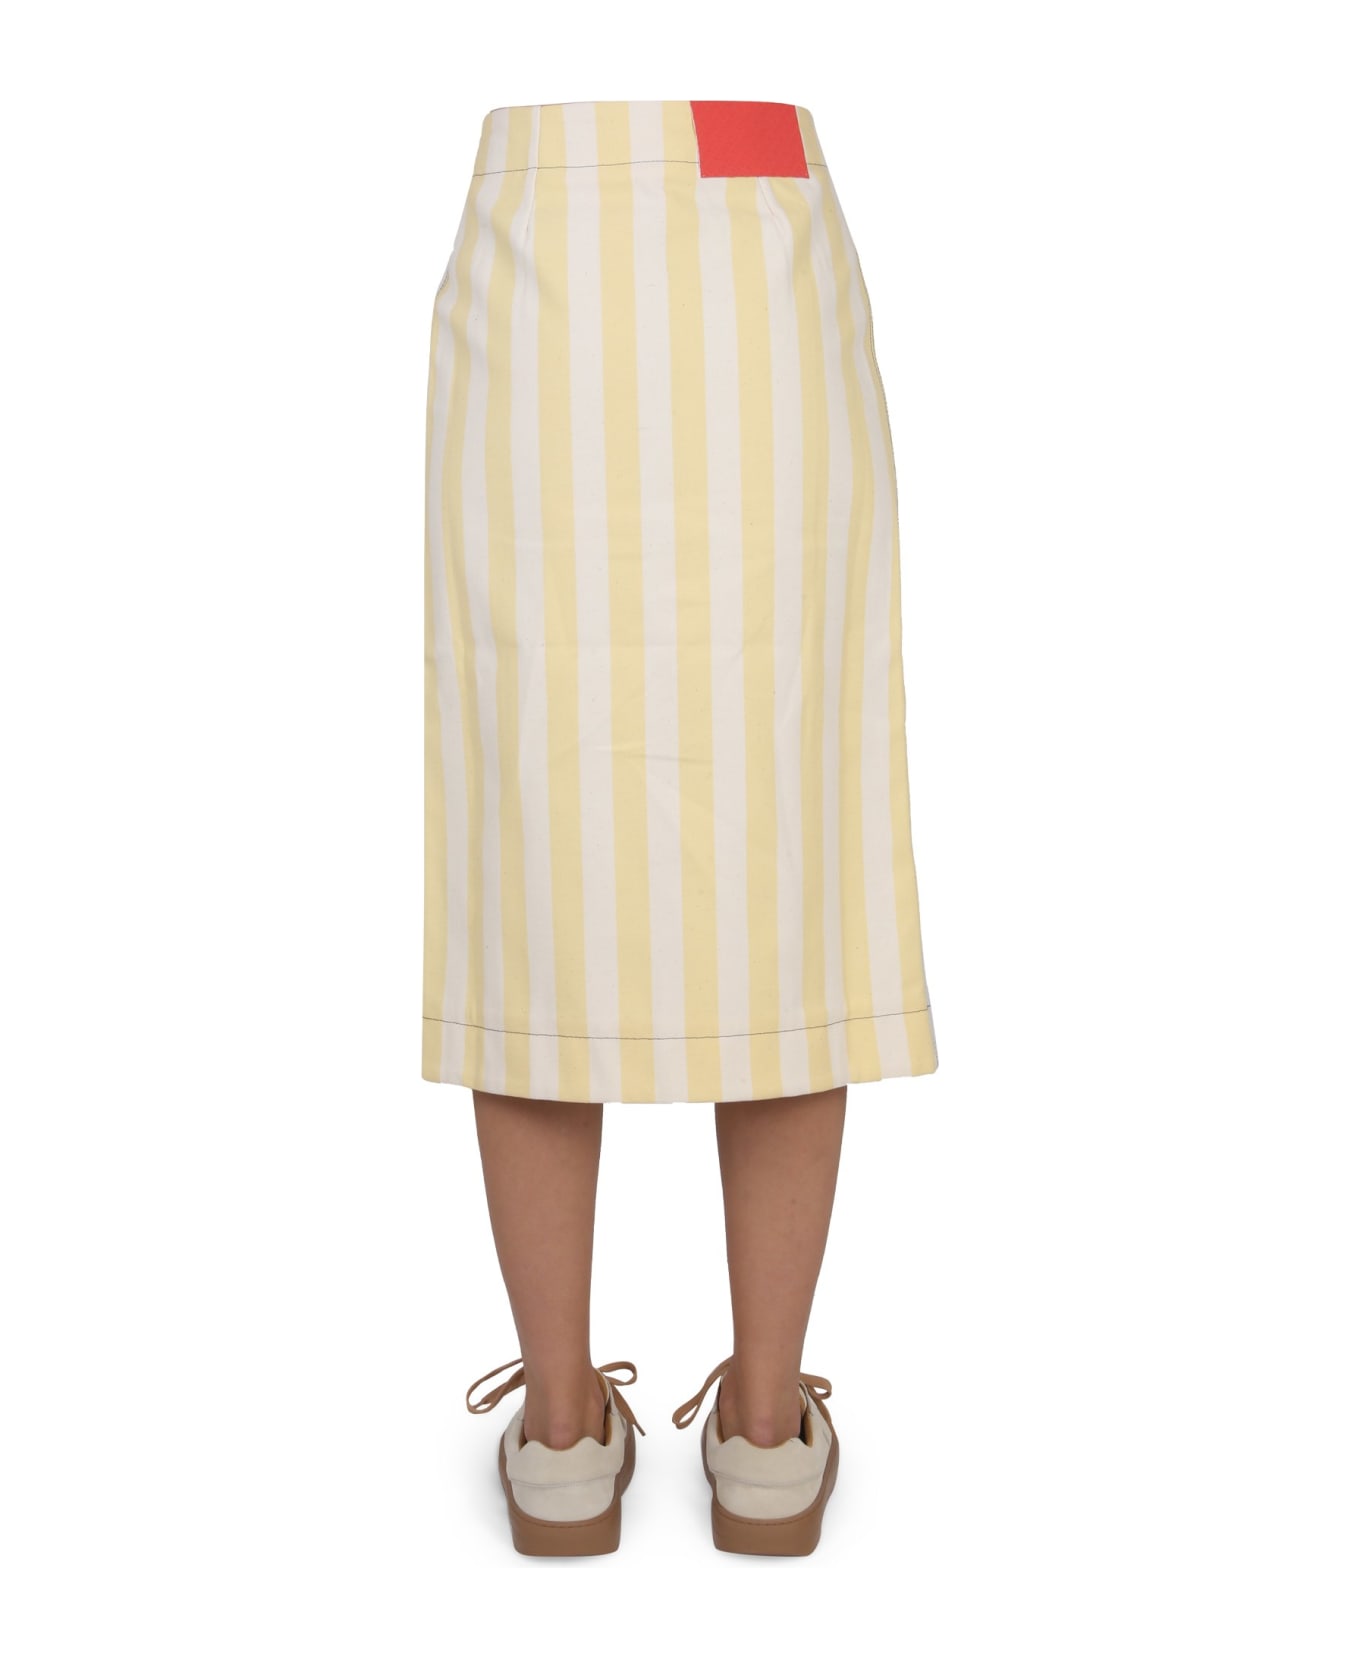 Sunnei Striped Pattern Skirt - BEIGE